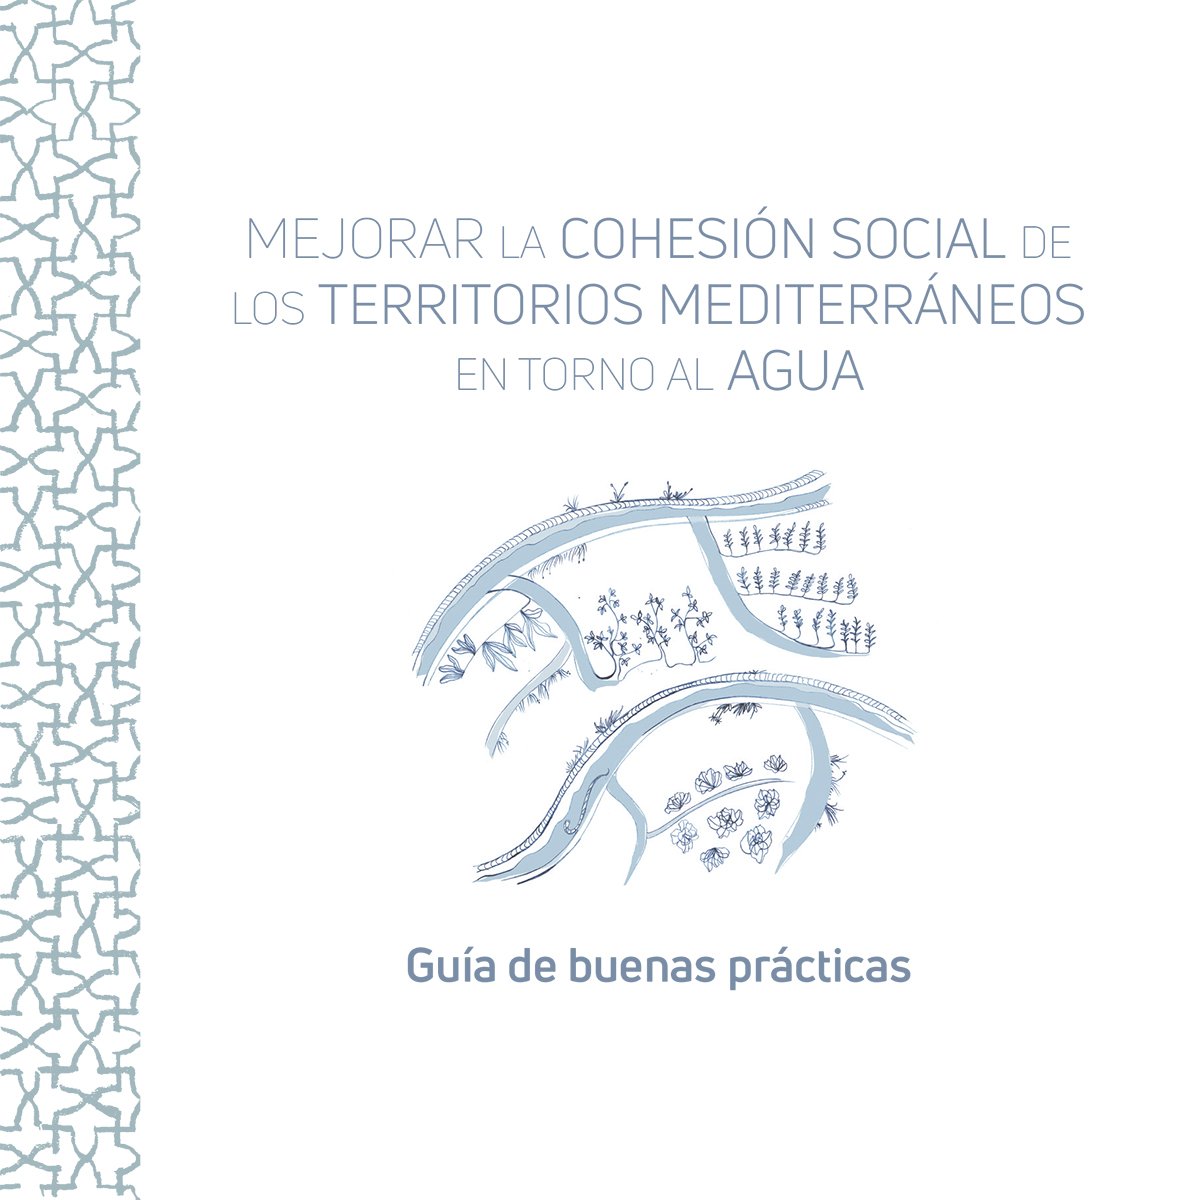 Guía de buenas prácticas para la cohesión social territorial mediterránea en torno al agua